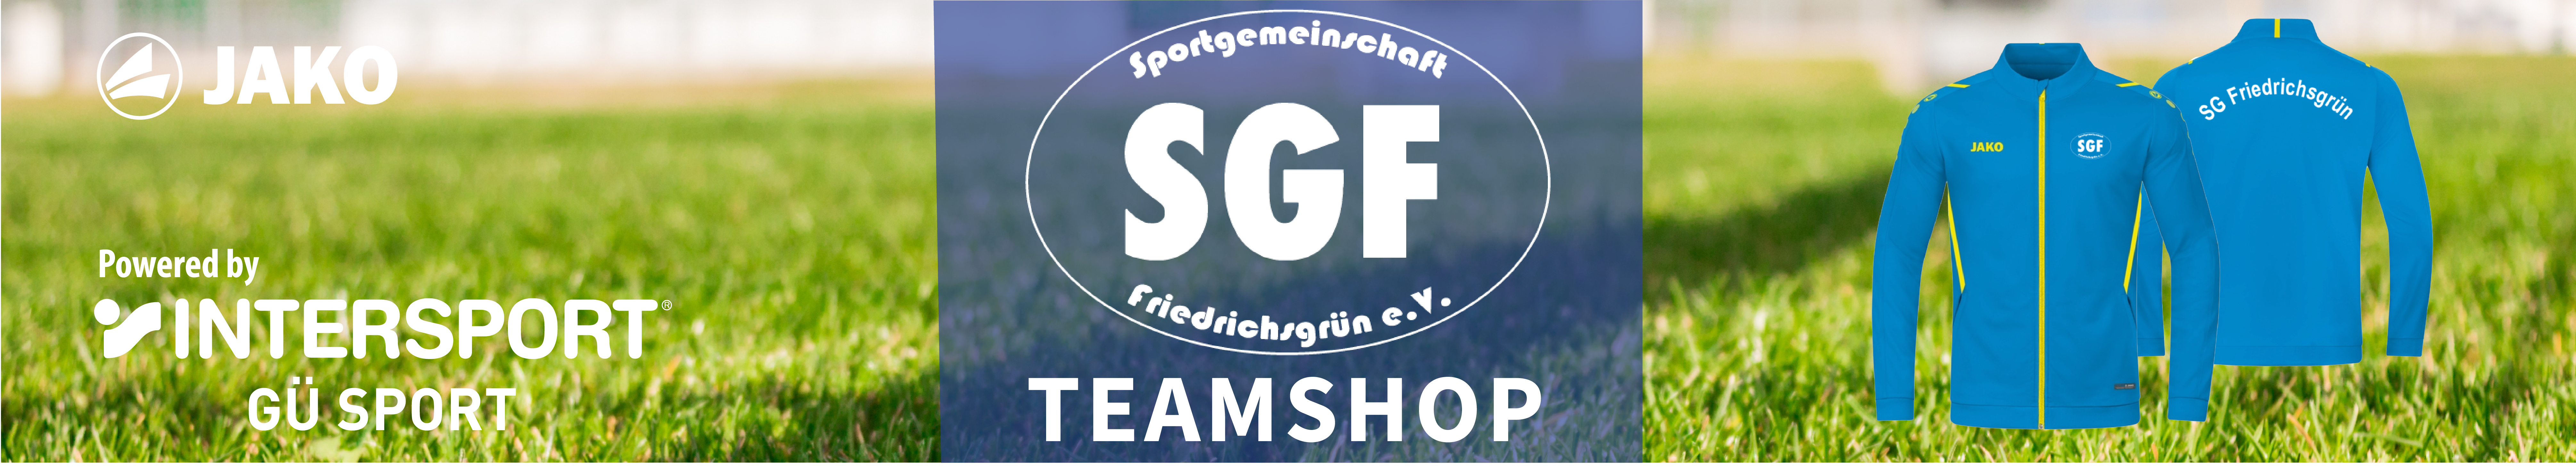 SG Friedrichsgrün Title Image